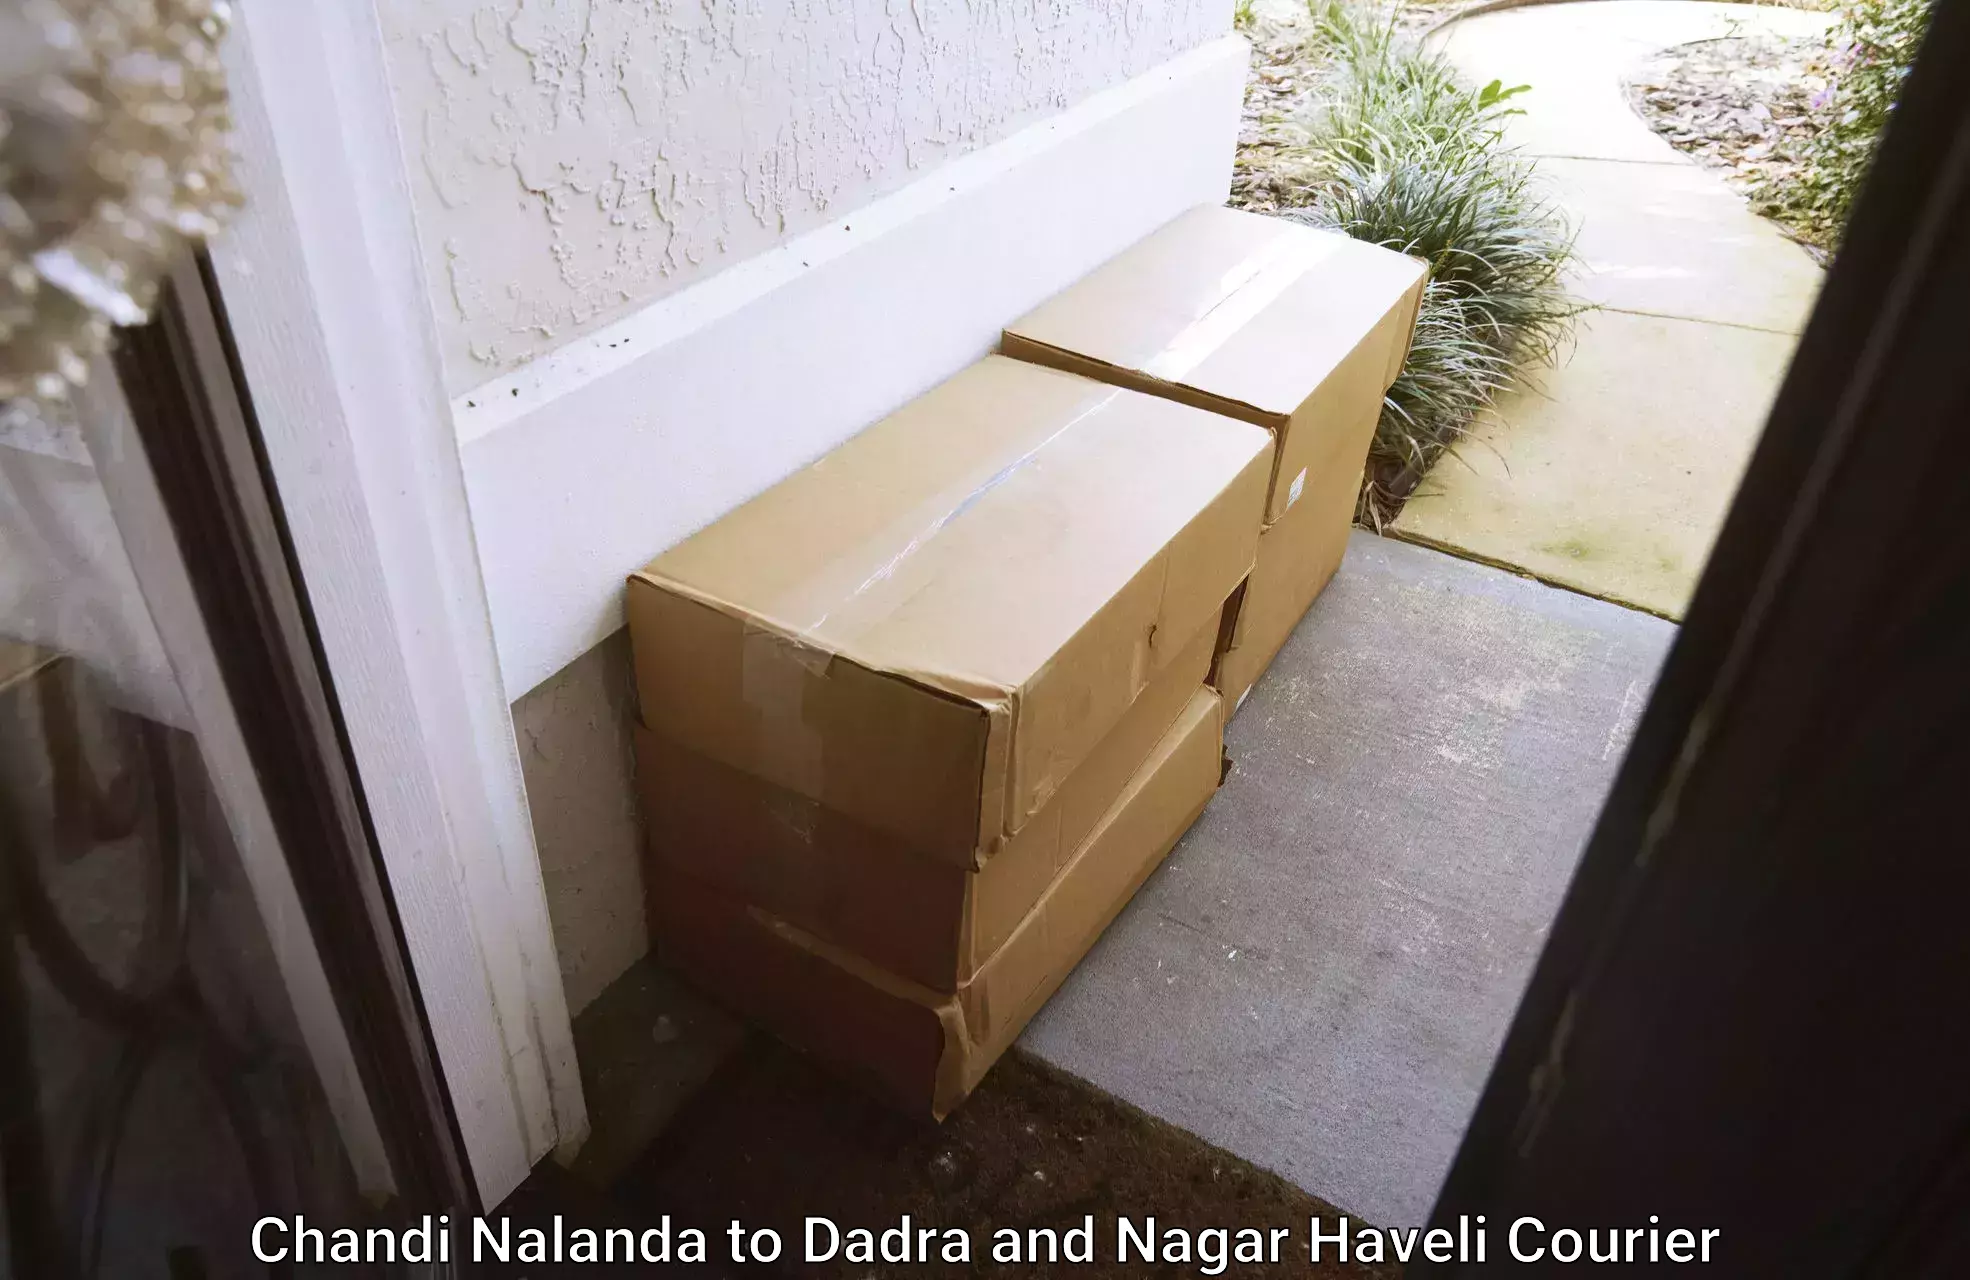 Furniture delivery service in Chandi Nalanda to Silvassa